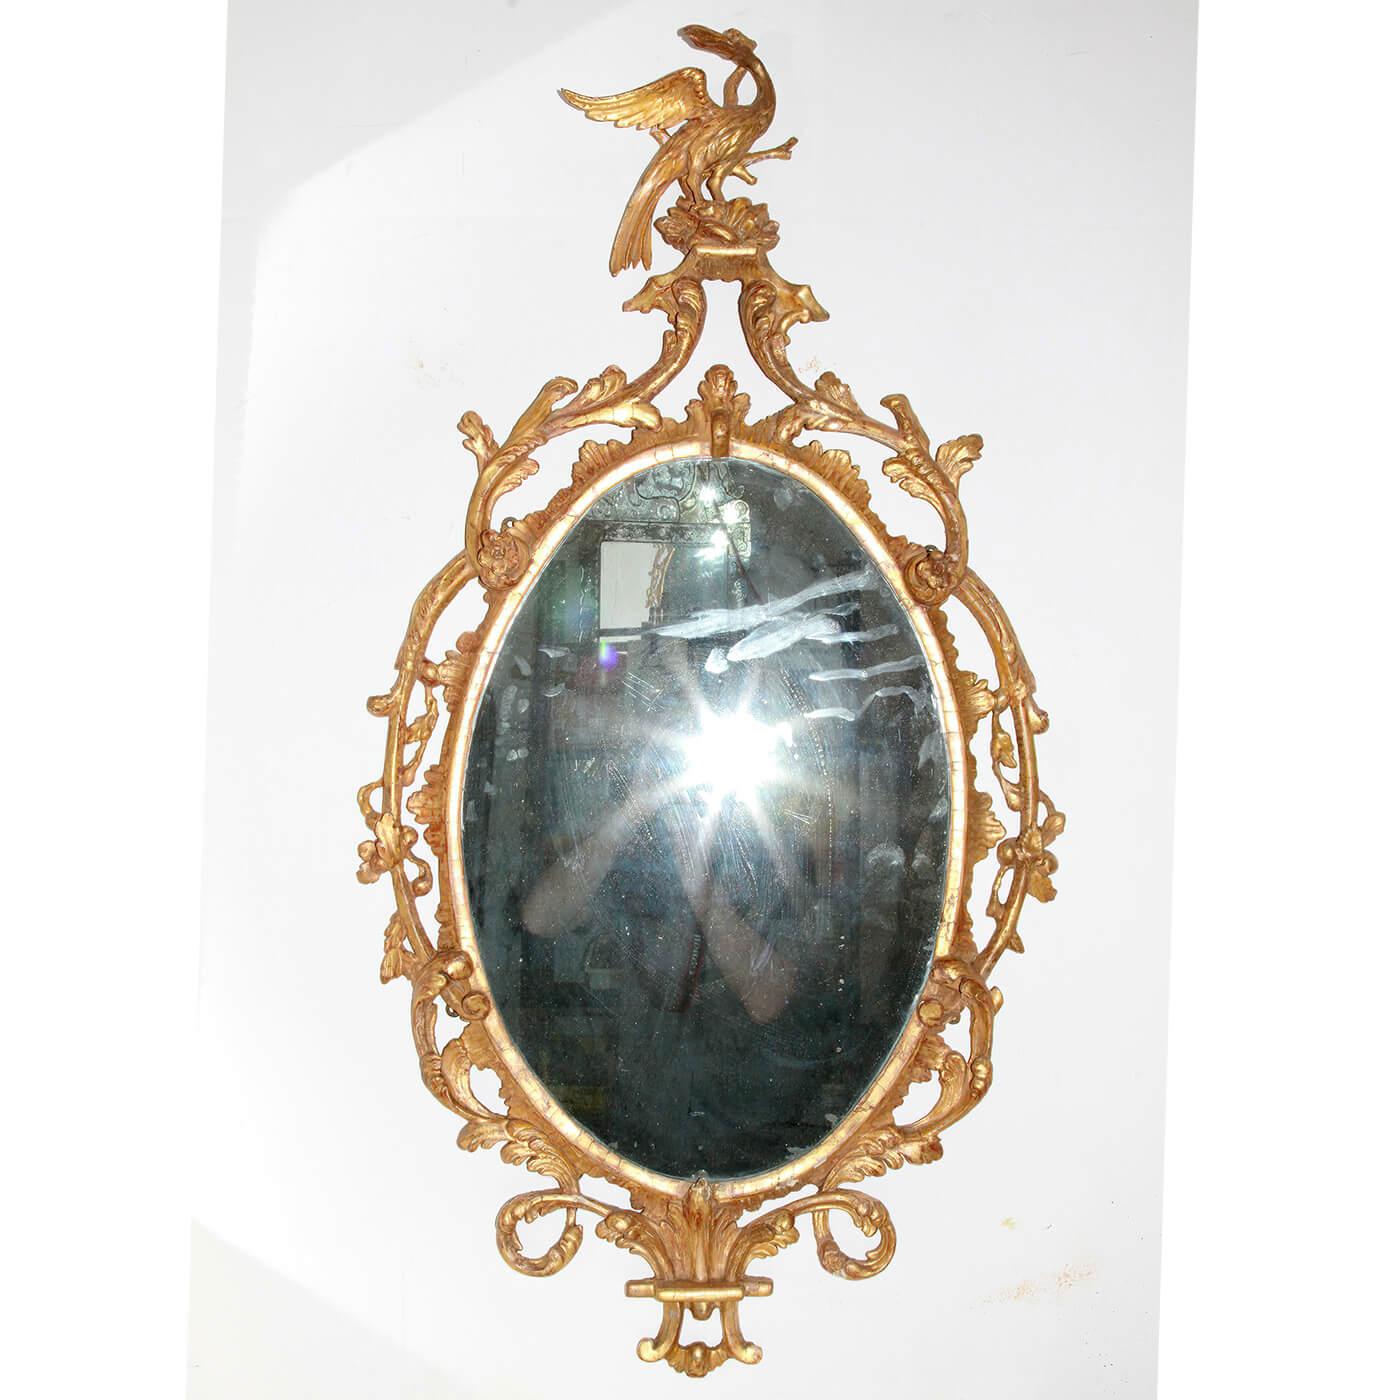 Ein feiner und seltener ovaler Spiegel aus geschnitztem Goldholz von George III. mit einem geschnitzten Phönix-Aufsatz, einem kunstvoll geschnitzten durchbrochenen Rahmen mit geschnitztem Akanthus und Eichenblättern. Mit einer originalen